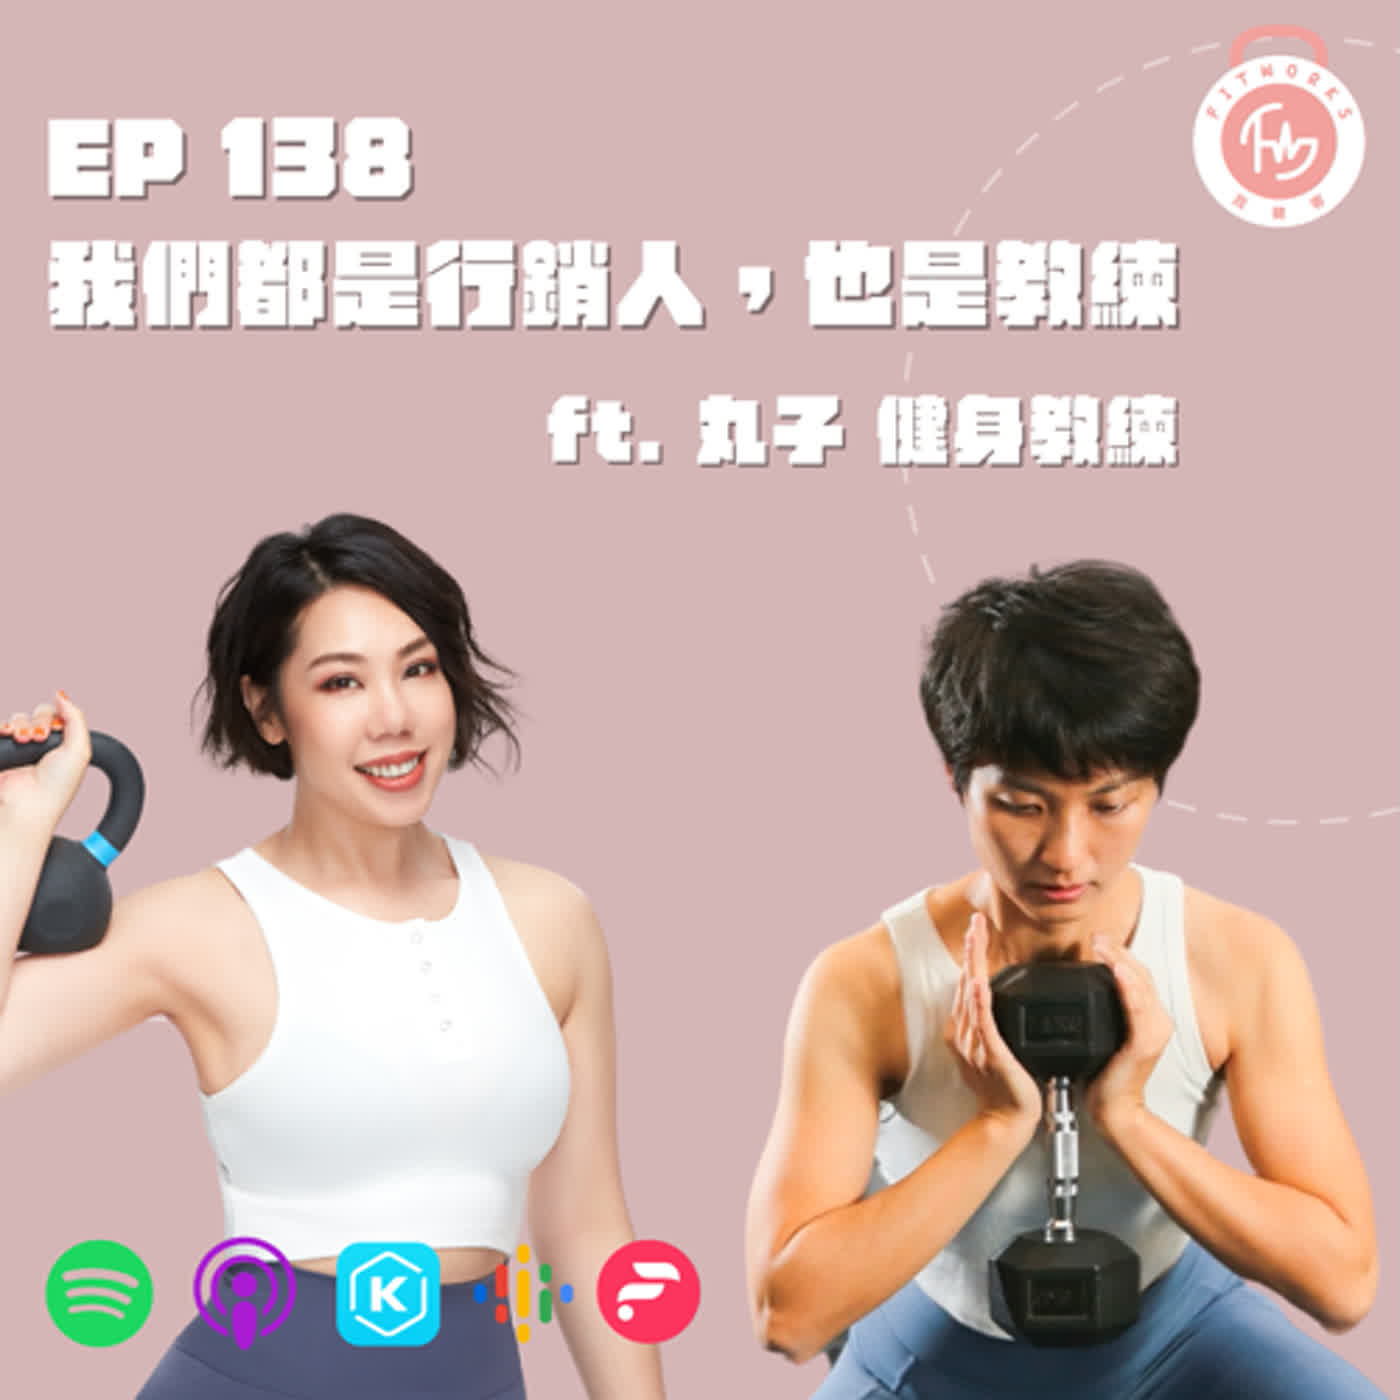 EP138-我們是行銷人，也是教練-ft. 丸子 健身教練